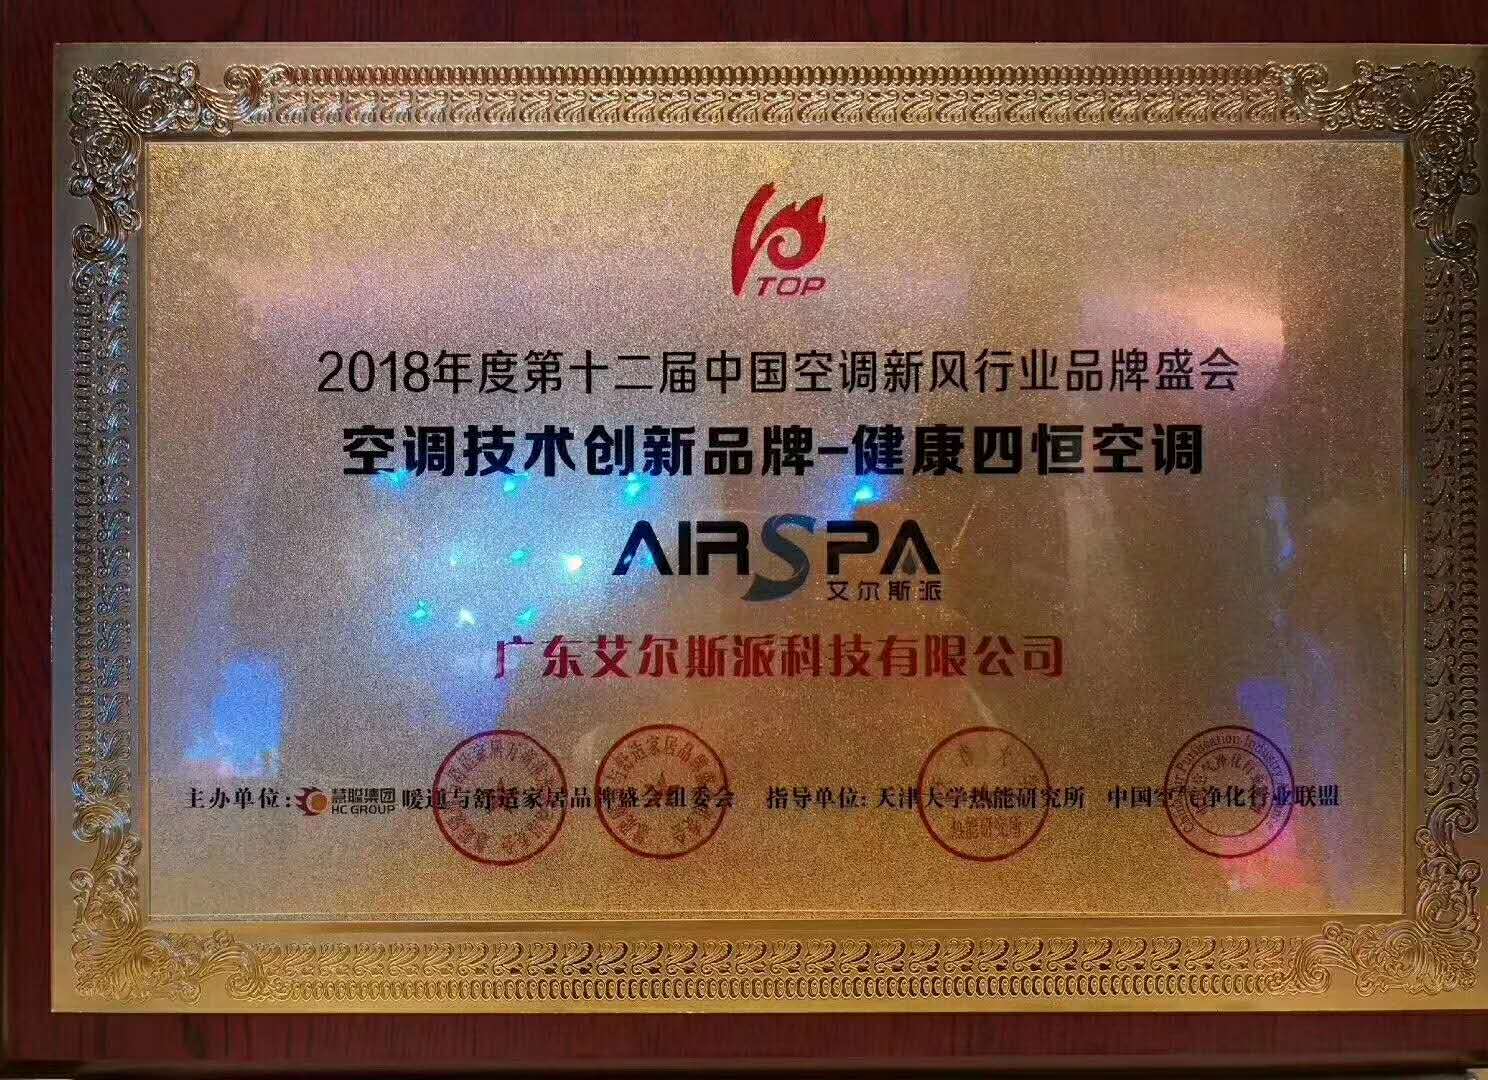 广东艾尔斯派科技有限公司荣获“2018年度新风系统领军品牌”